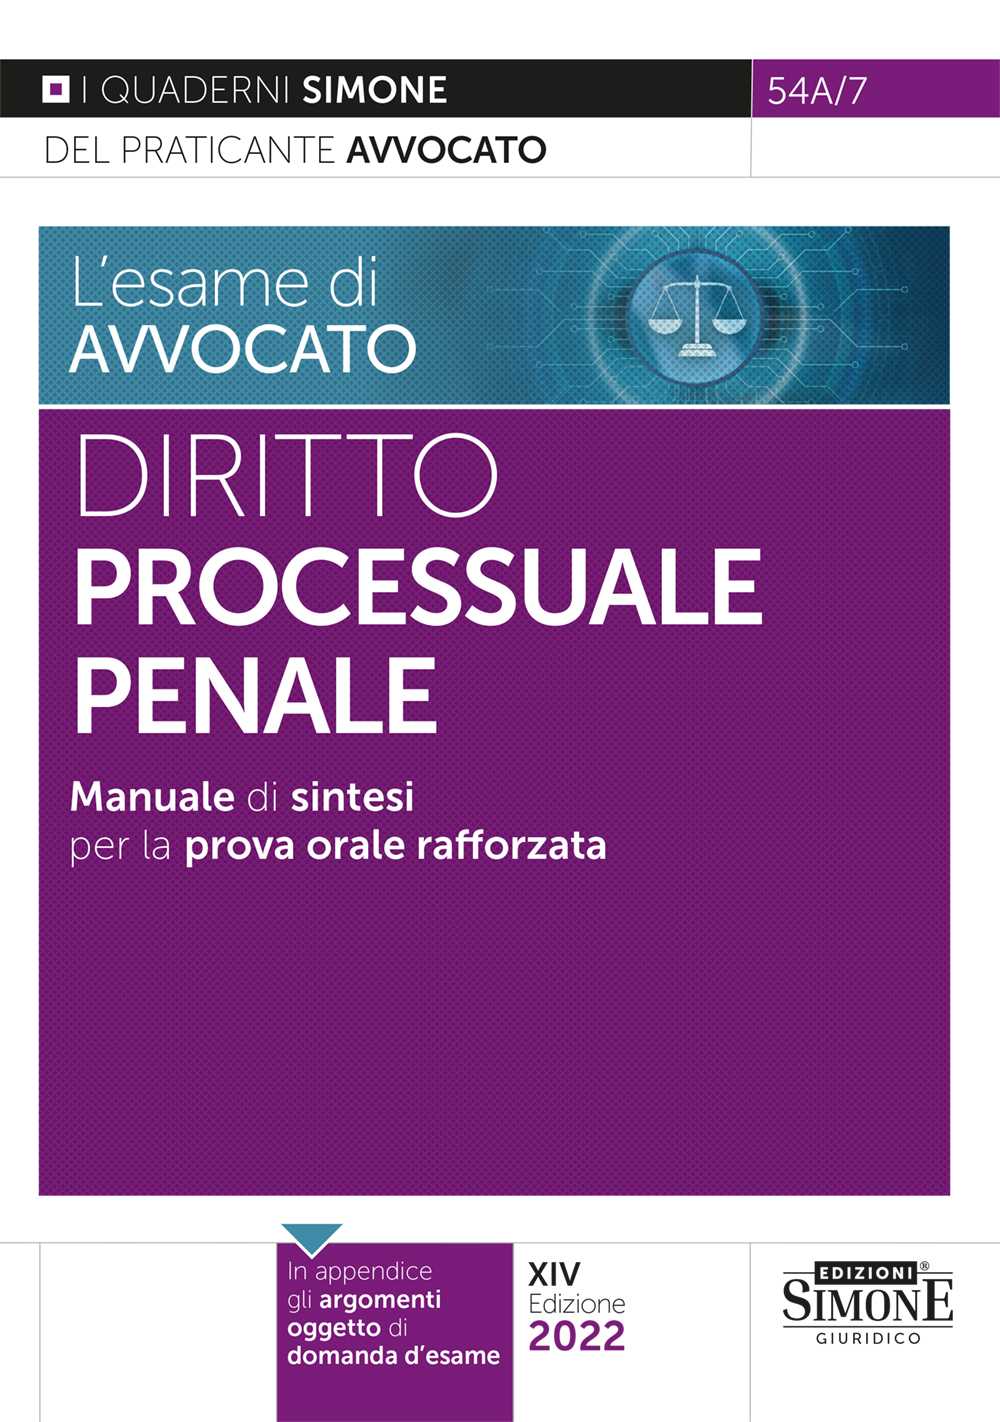 [Ebook] L'esame di avvocato - Diritto Processuale Penale - Manuale di sintesi per la prova orale rafforzata